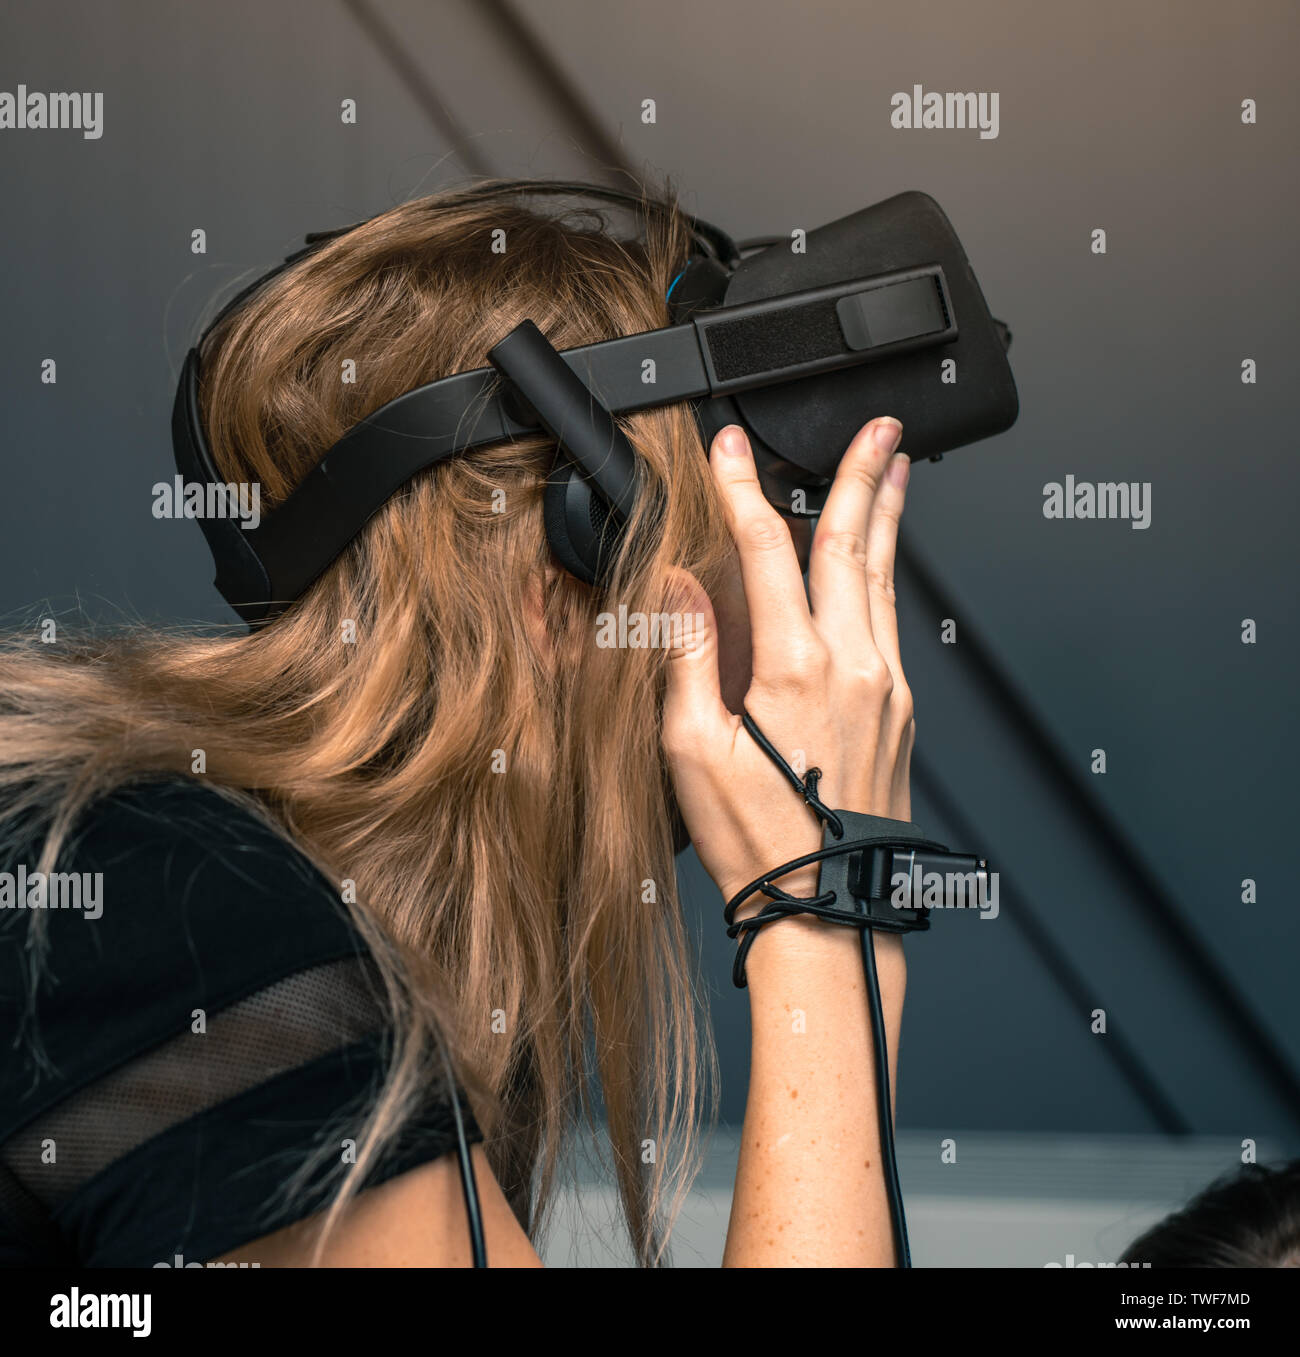 Lavar ventanas asiático Es decir La realidad virtual de inmersión total. La niña está usando gafas VR en su  cabeza, ella tiene una cámara de vídeo y un sensor de movimiento en su mano  Fotografía de stock -